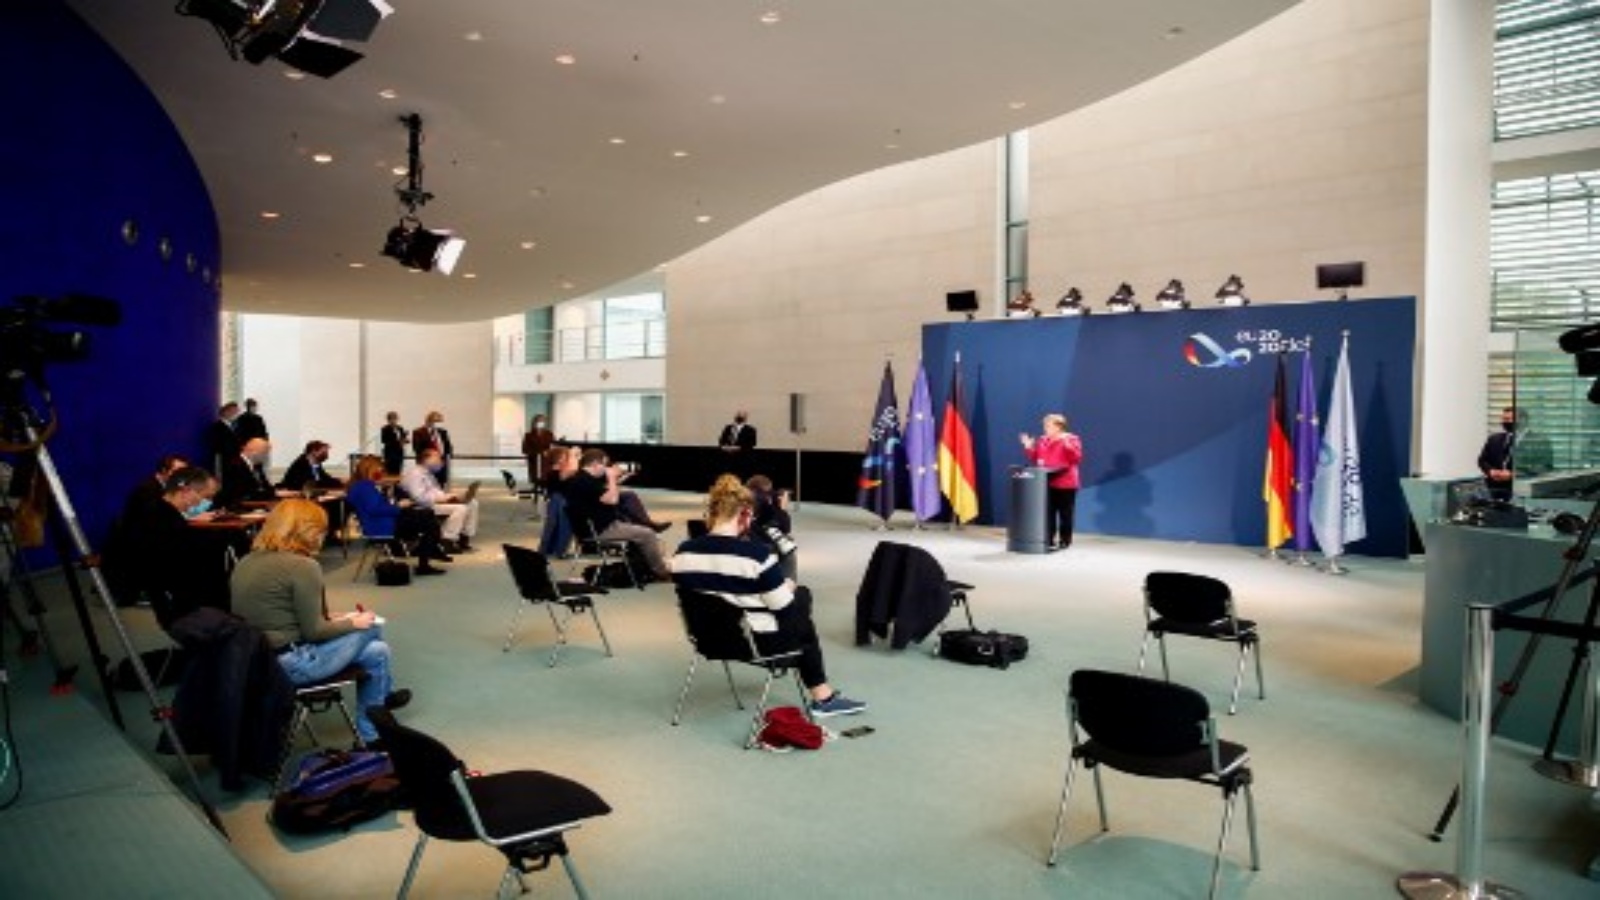 المستشارة الألمانية أنجيلا ميركل بيانًا عقب مؤتمرها بالفيديو مع مسؤولين من أكبر مدن ألمانيا في ألمانيا بشأن Covid-19 ، في 9 أكتوبر 2020 في المستشارية في برلين ، تشهد ألمانيا 